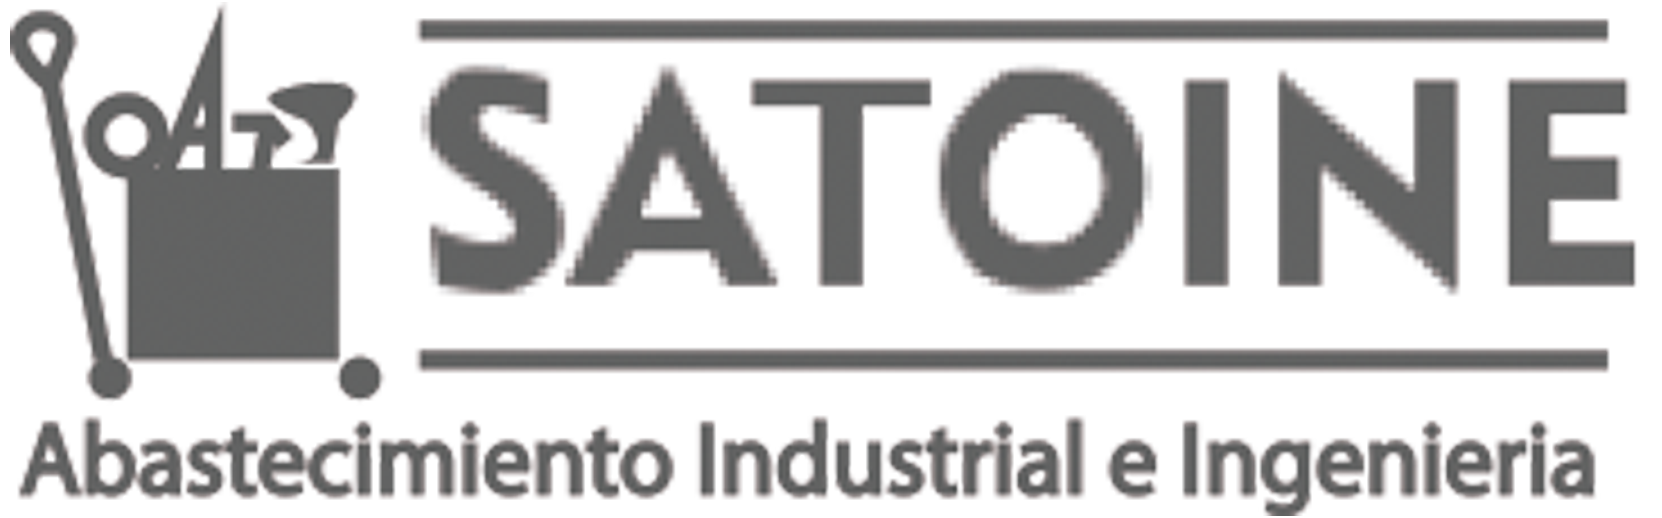 Satoine - Abastecimiento Industrial e Ingeniería.